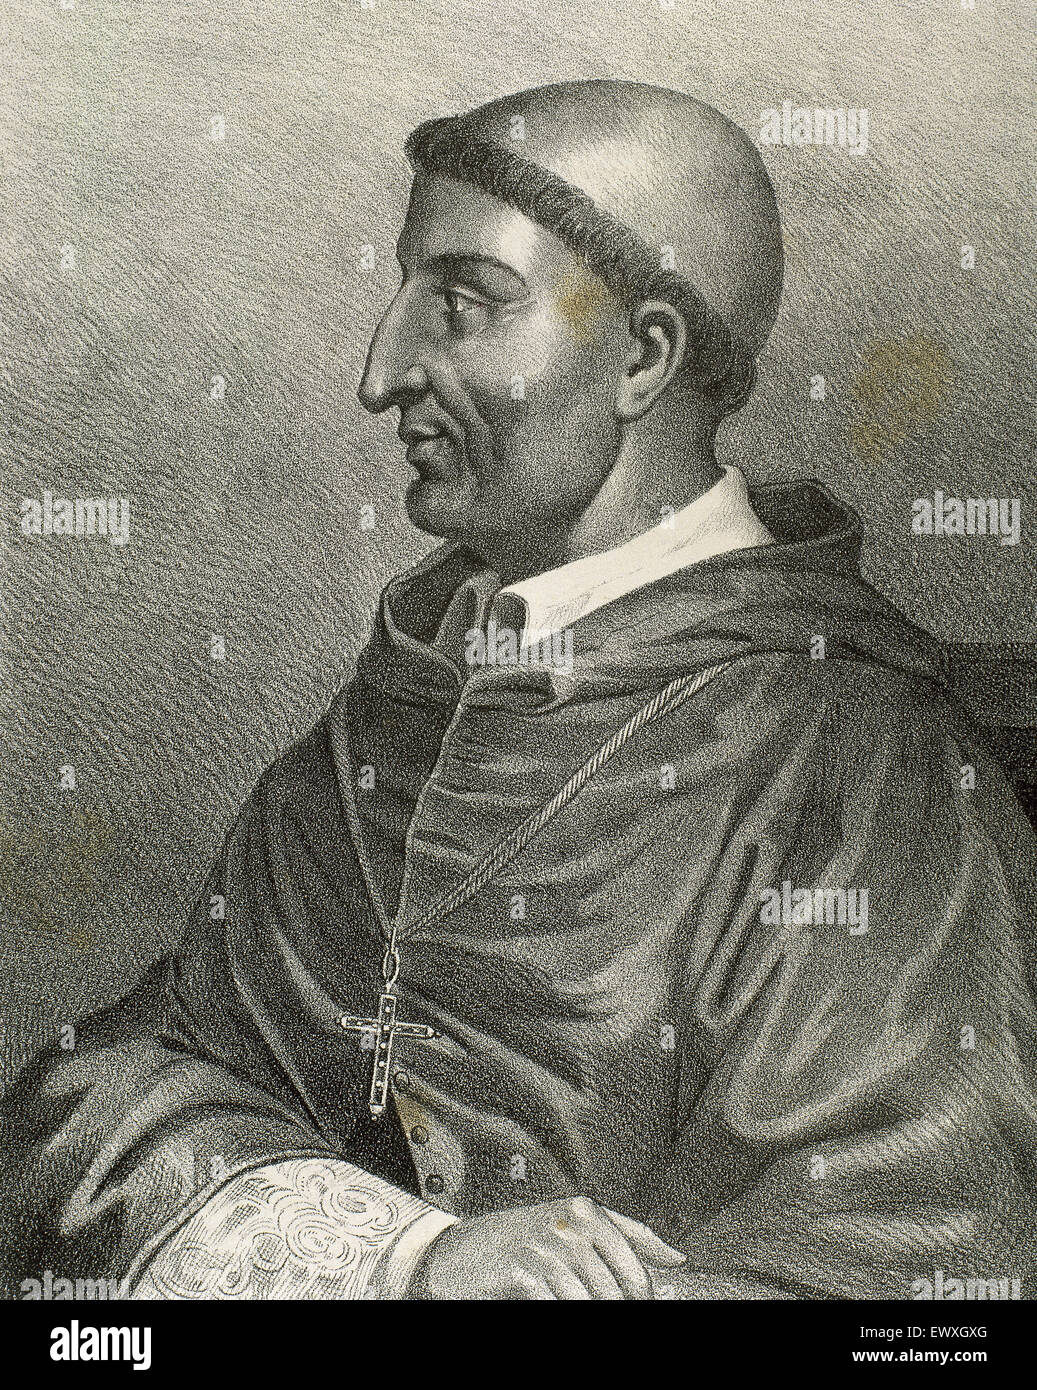 Francisco Jiménez de Cisneros (1436-1517). Cardinal et homme d'État espagnol. Gravure, 19ème siècle. Banque D'Images